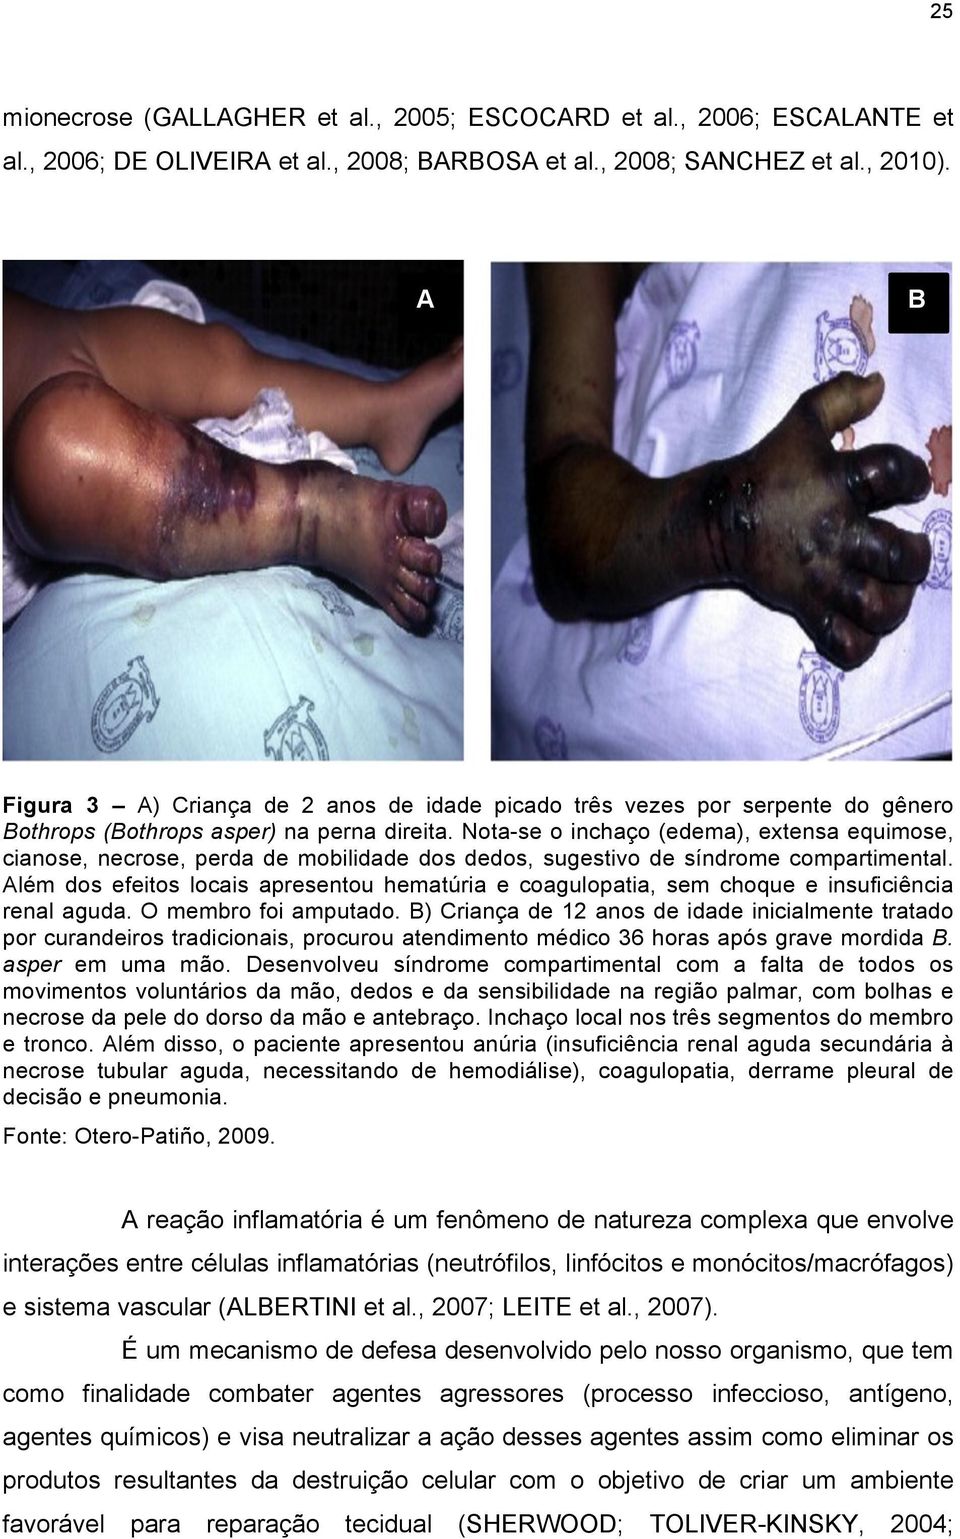 Nota-se o inchaço (edema), extensa equimose, cianose, necrose, perda de mobilidade dos dedos, sugestivo de síndrome compartimental.